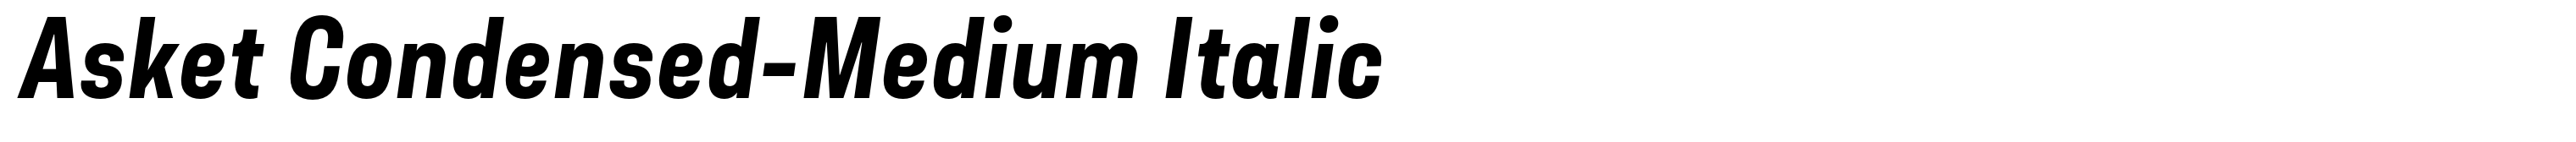 Asket Condensed-Medium Italic